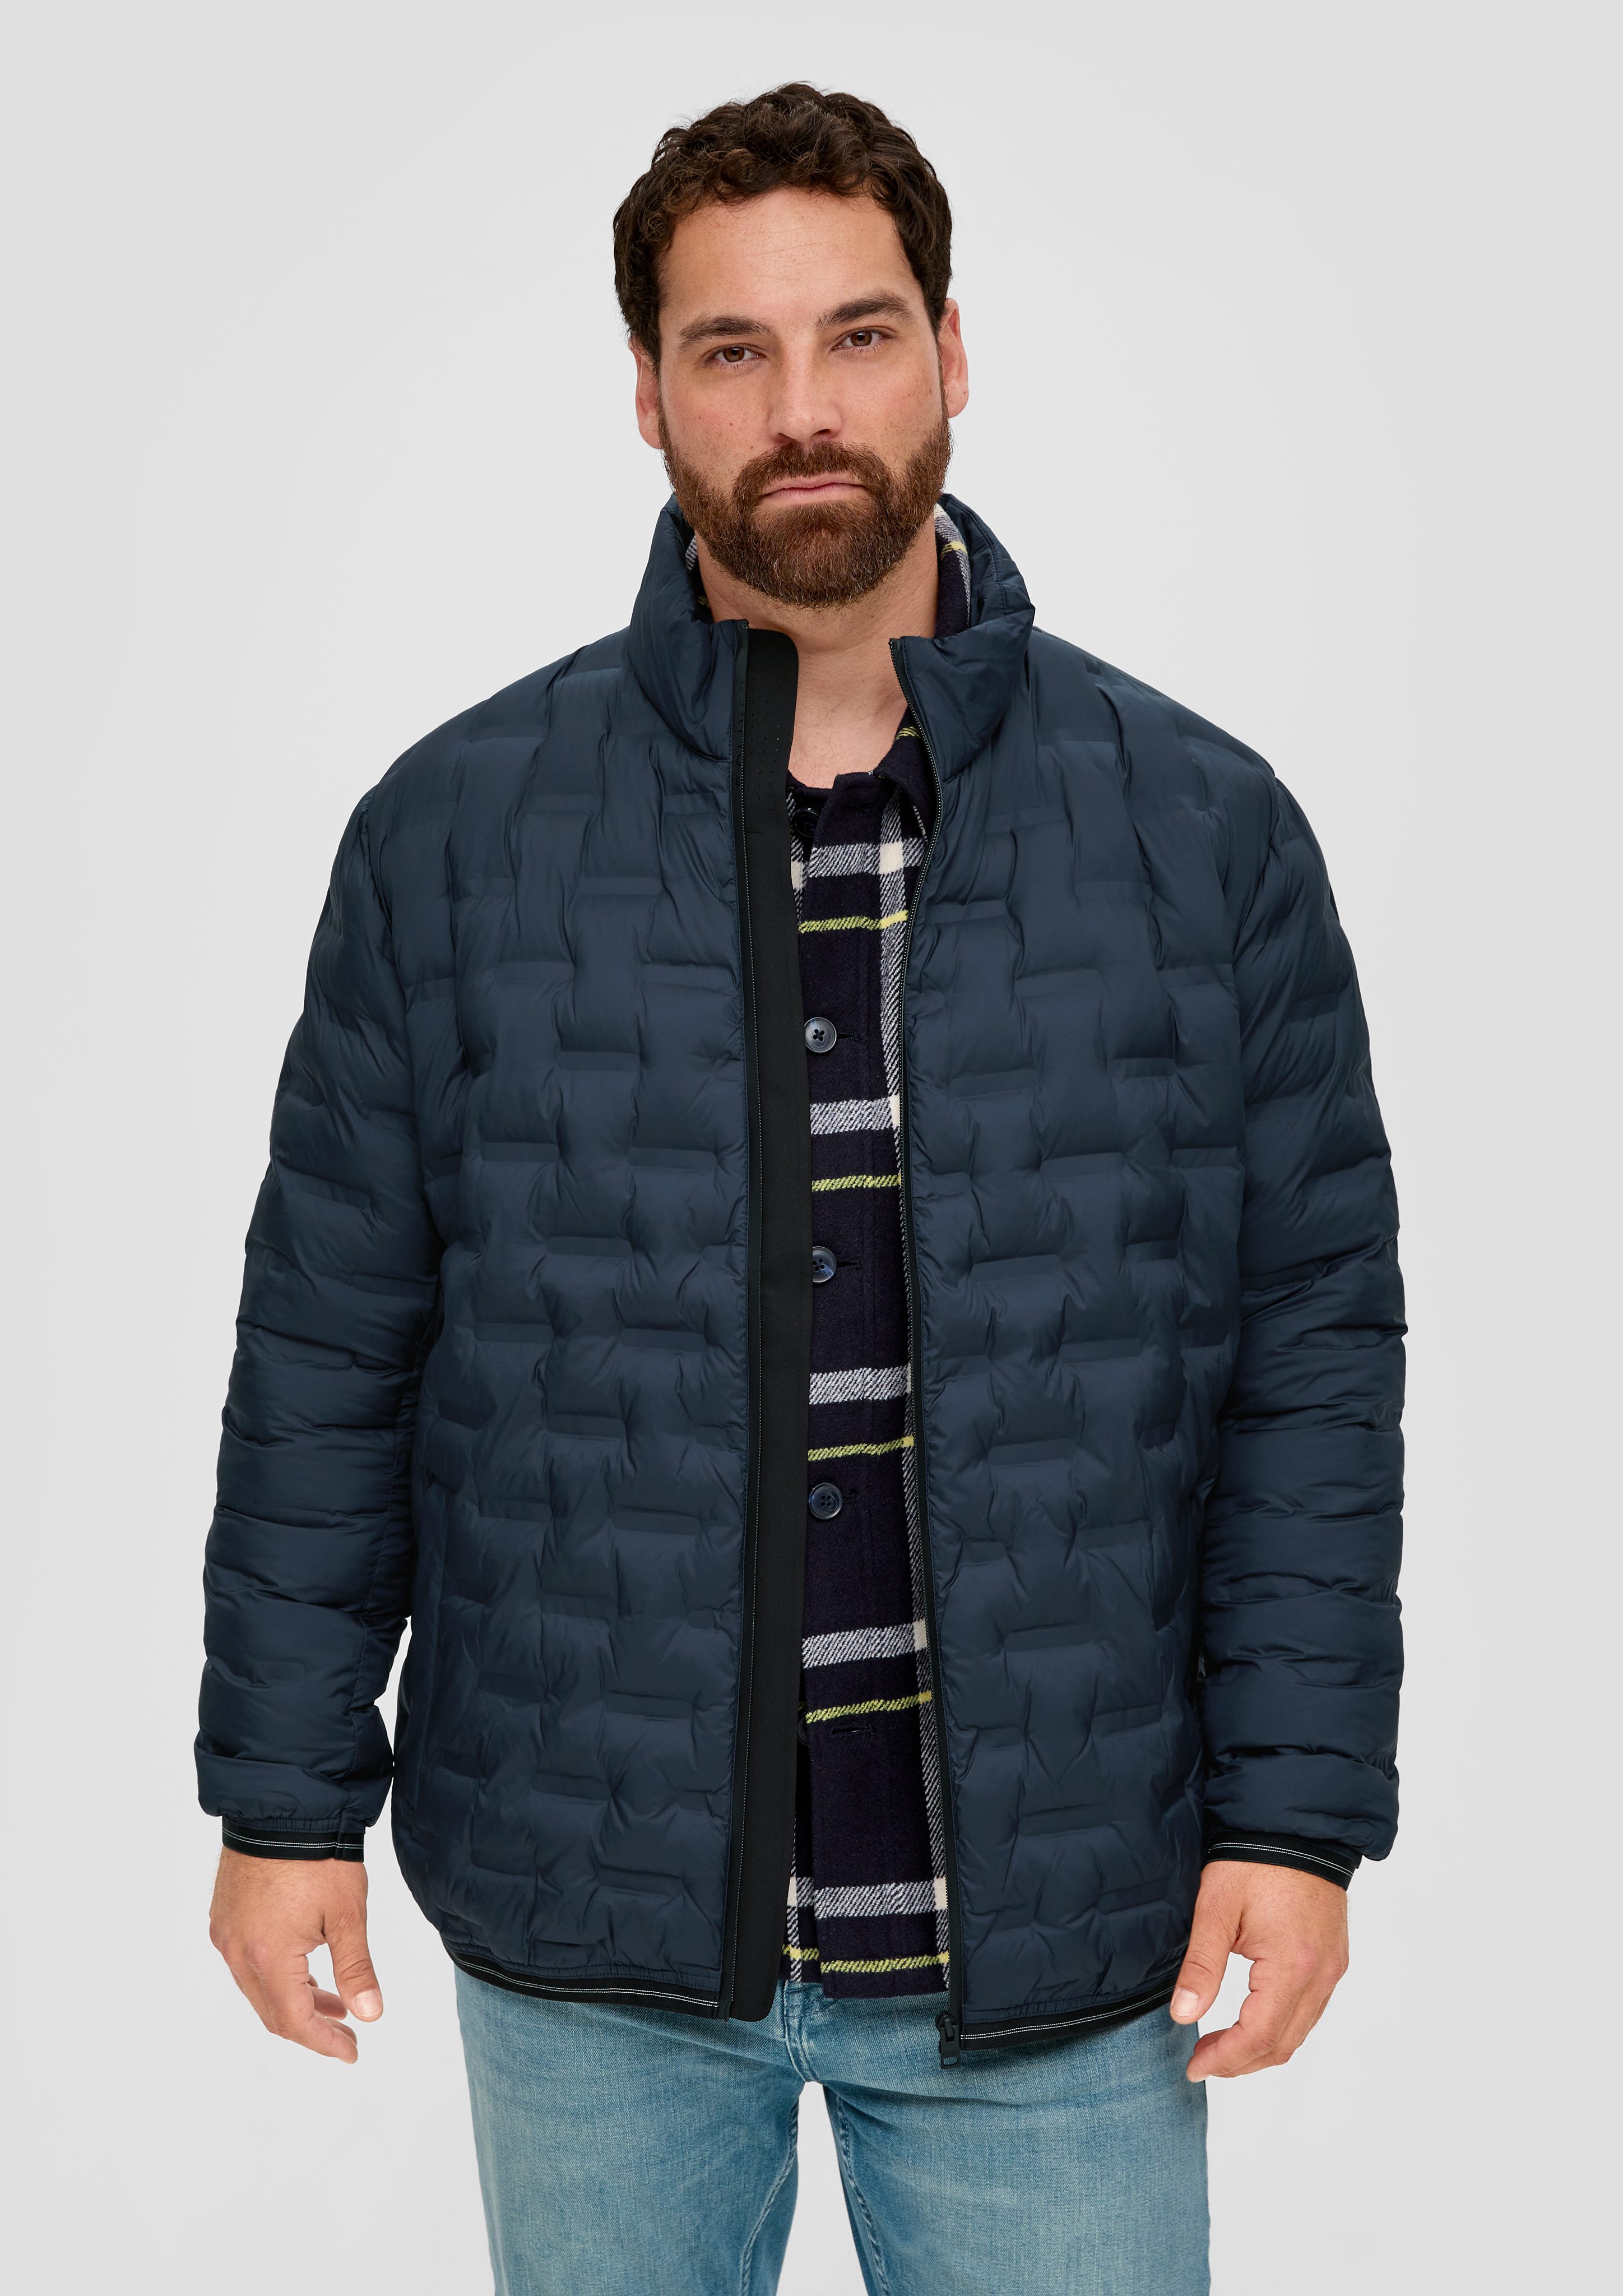 s.Oliver Outdoorjacke Jacke mit Reißverschlusstaschen Applikation navy